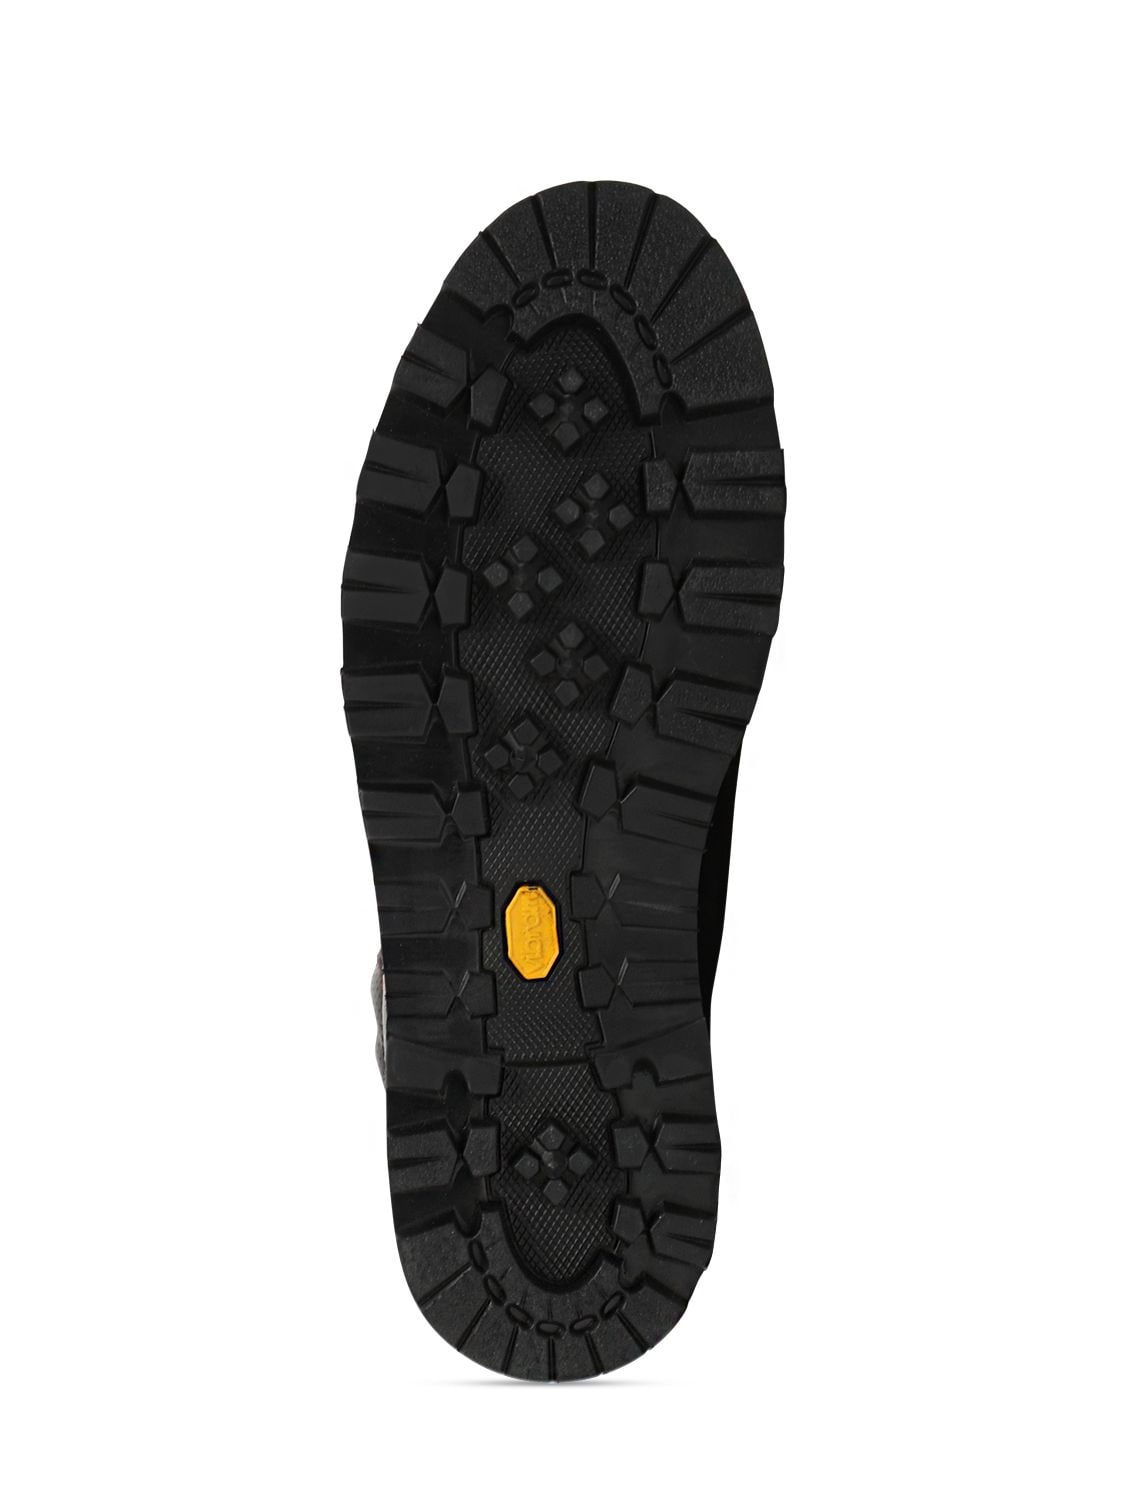 Shop Moncler Peka Trek Hiking Boots In Brown,black